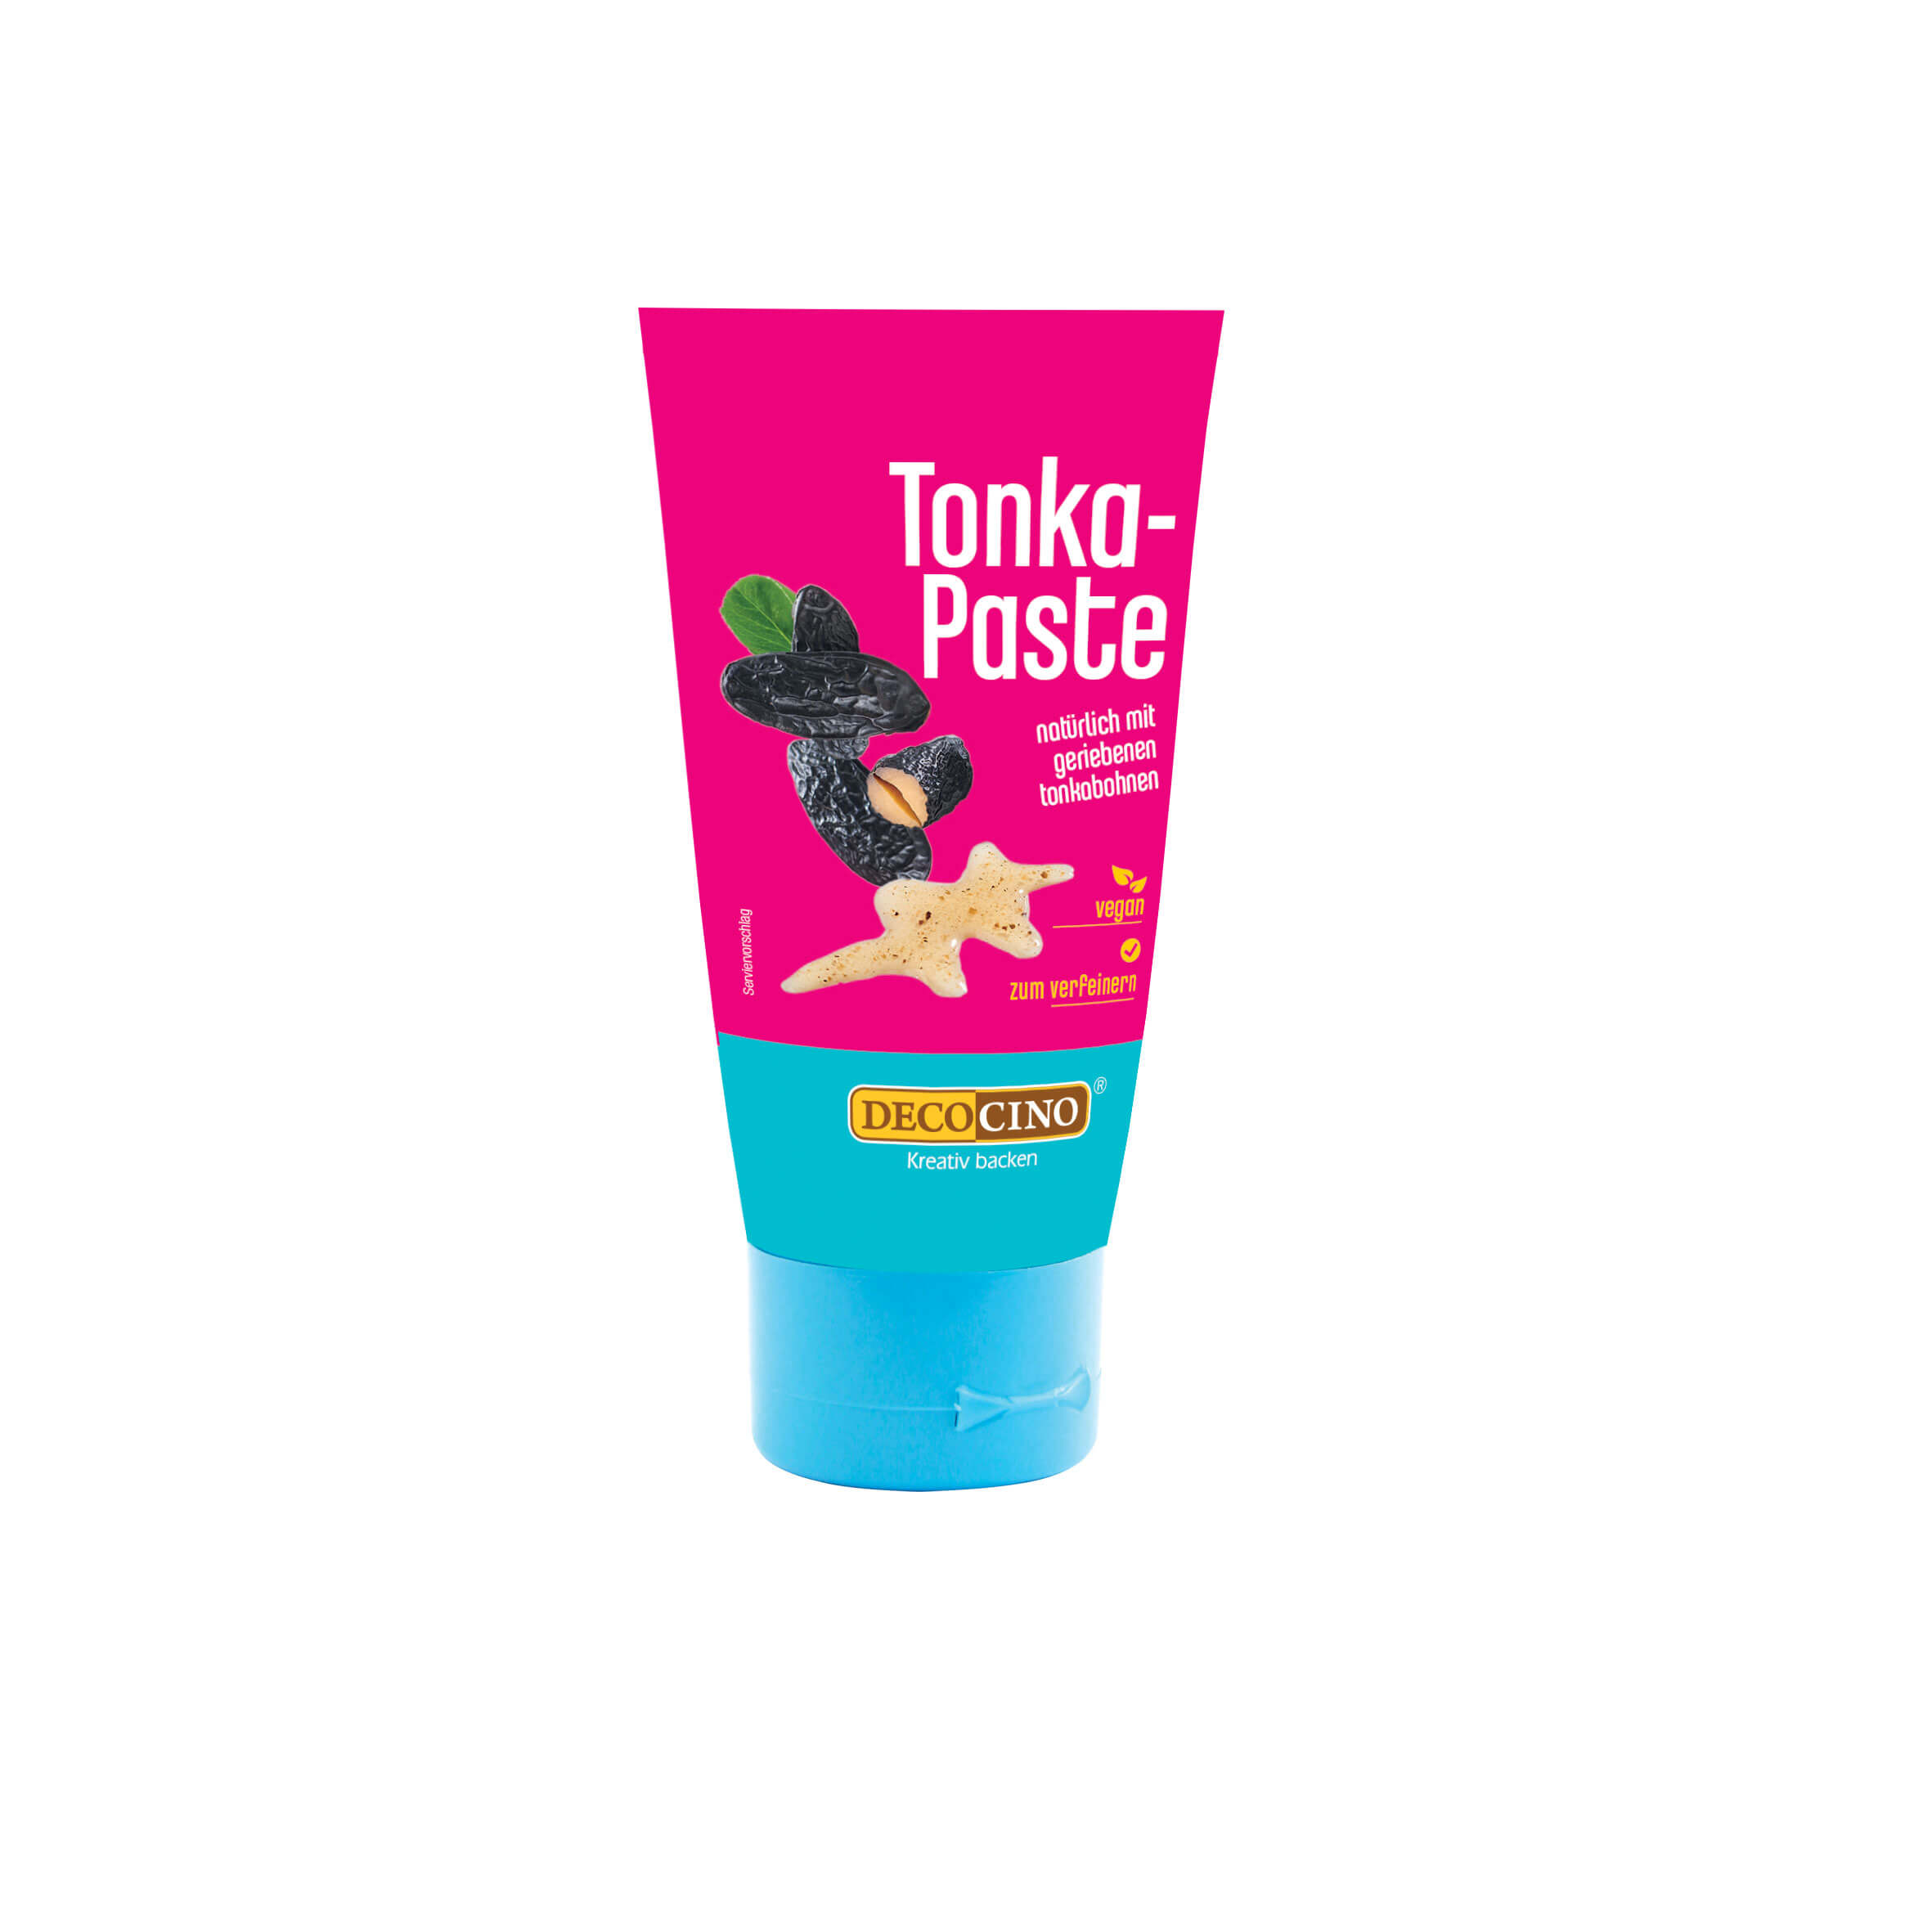 Tonka-Paste